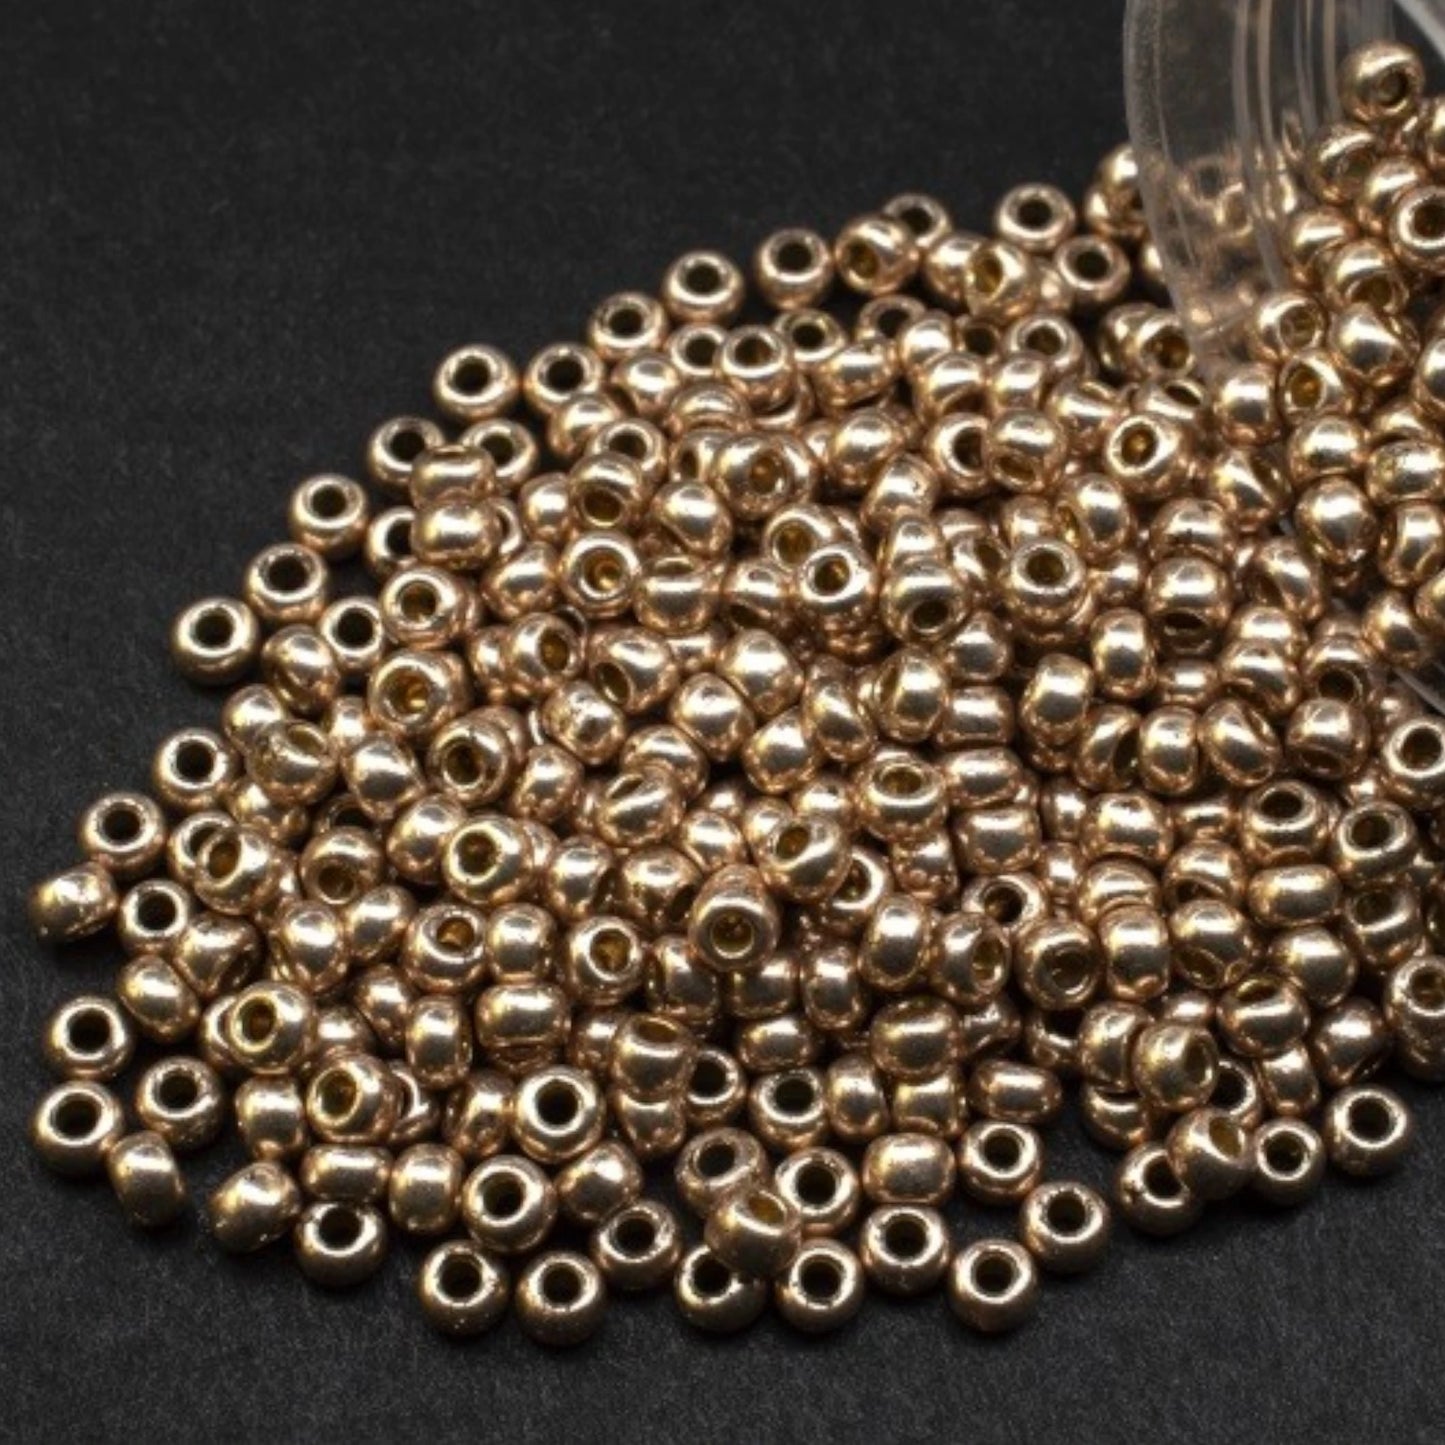 18113 Perles de rocailles tchèques PRECIOSA rondes 10/0 Or métallisé. Métallique - Solgel.